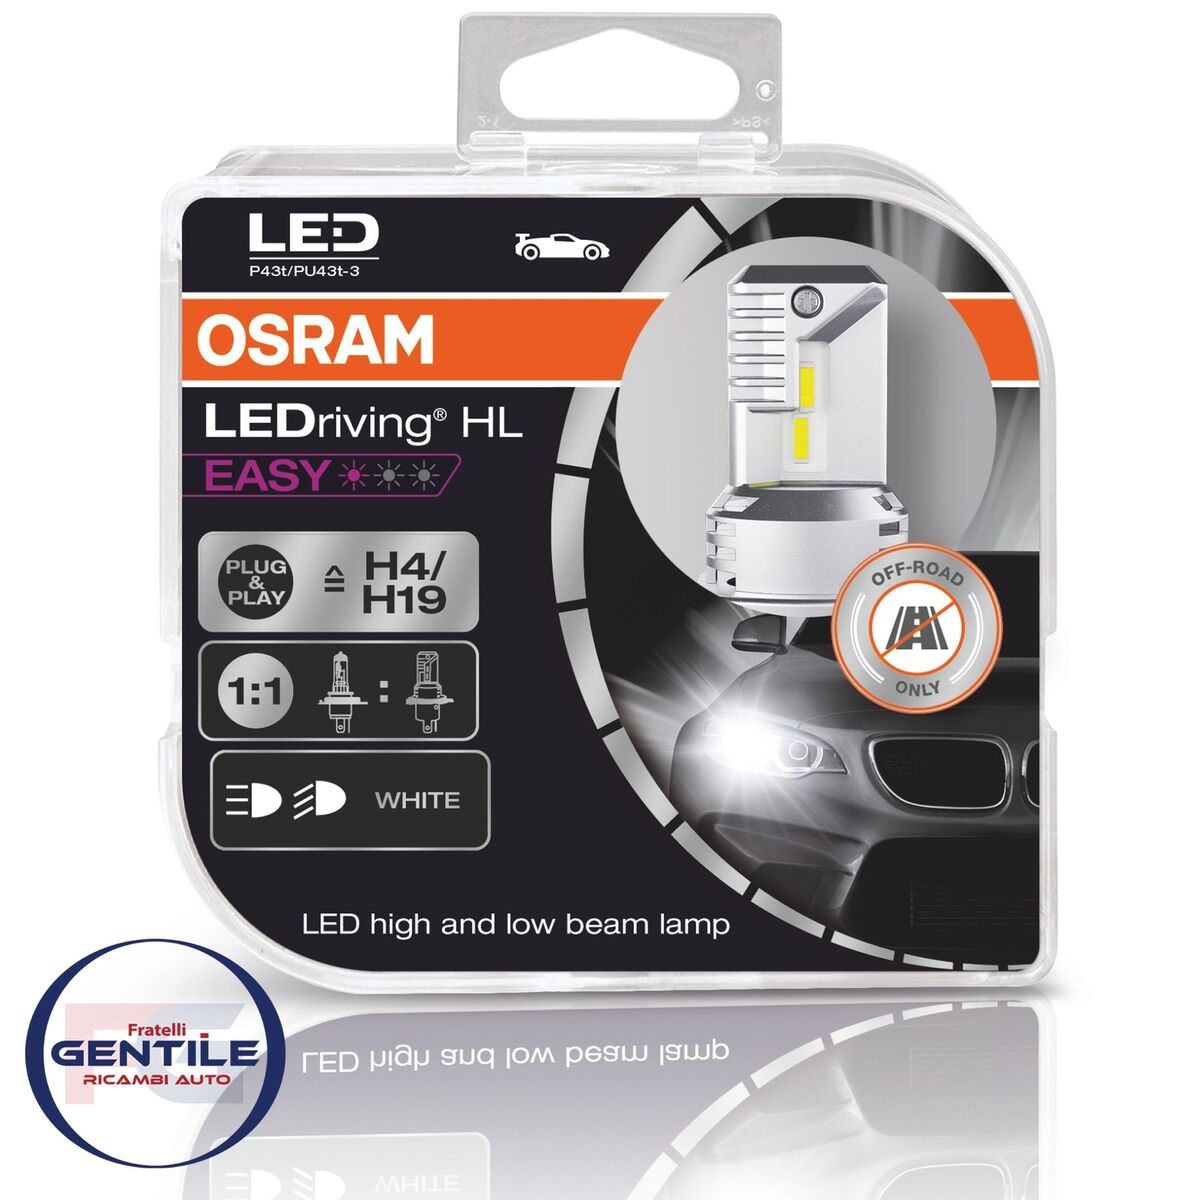 Set Lamps Osram LED H4/H19 6000K Plug Play No Original | eBay